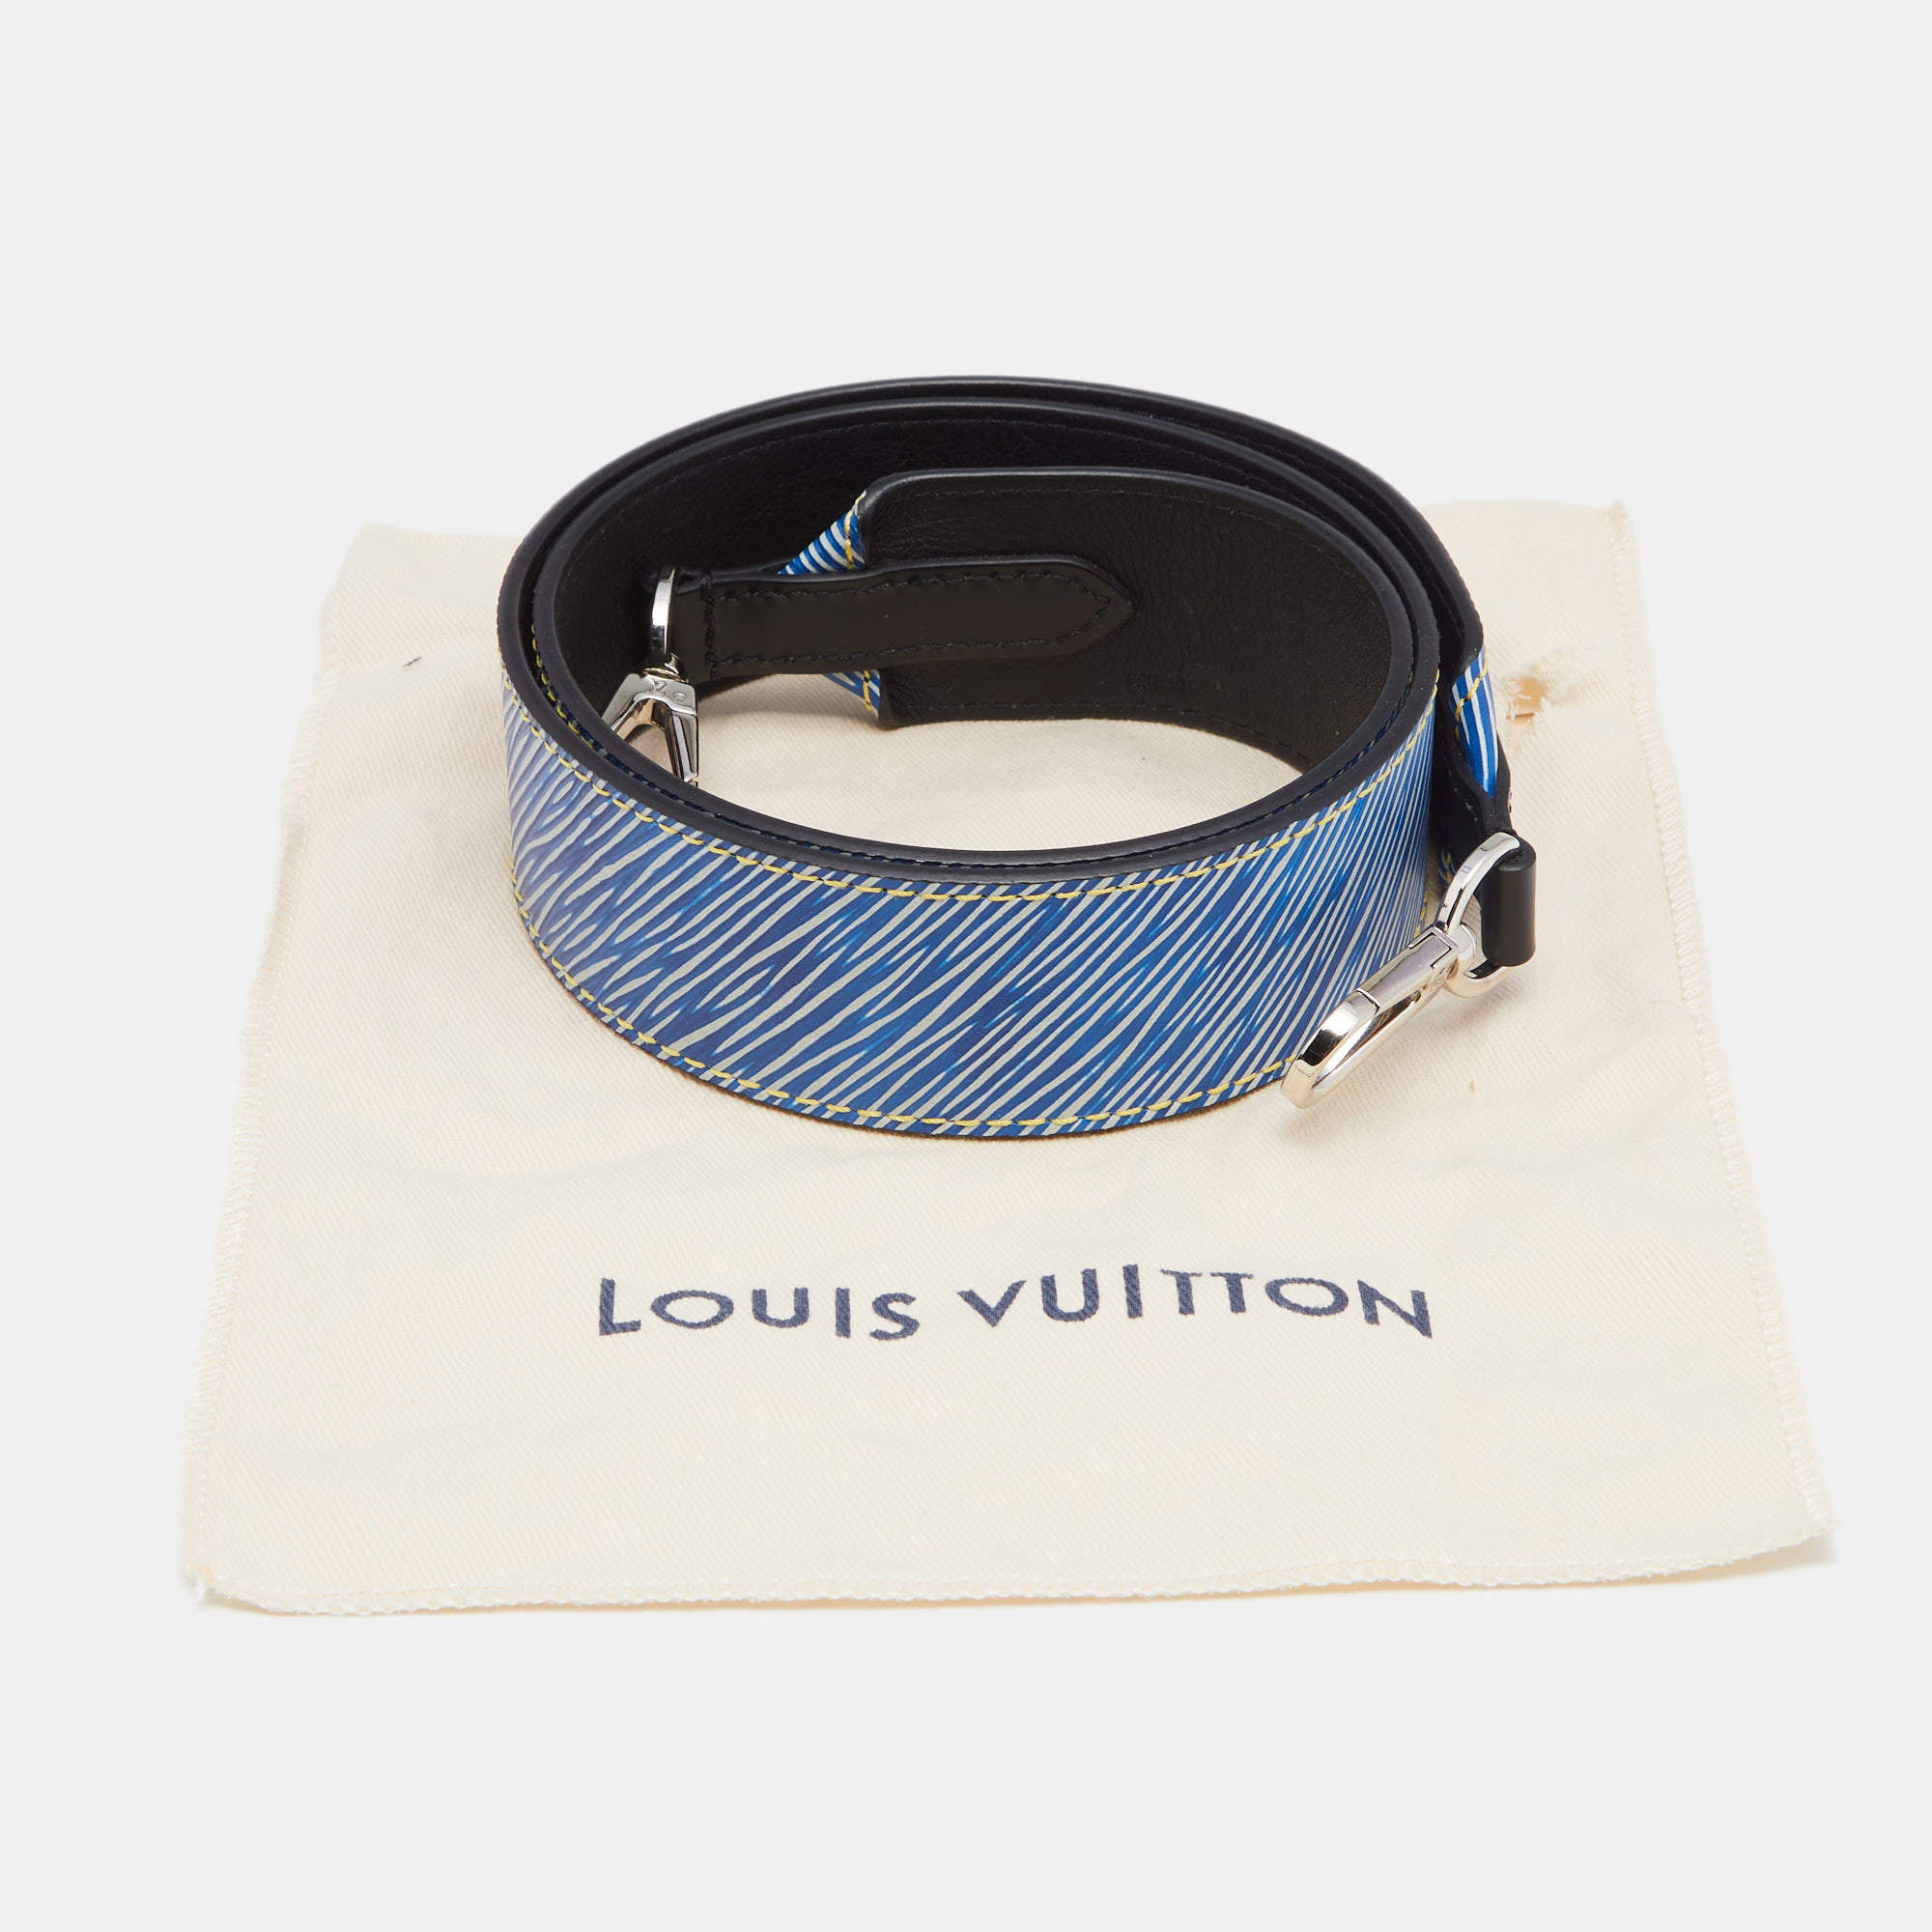 LOUIS VUITTON Strap Epi Bandouliere Shoulder Strap Blue, White and black